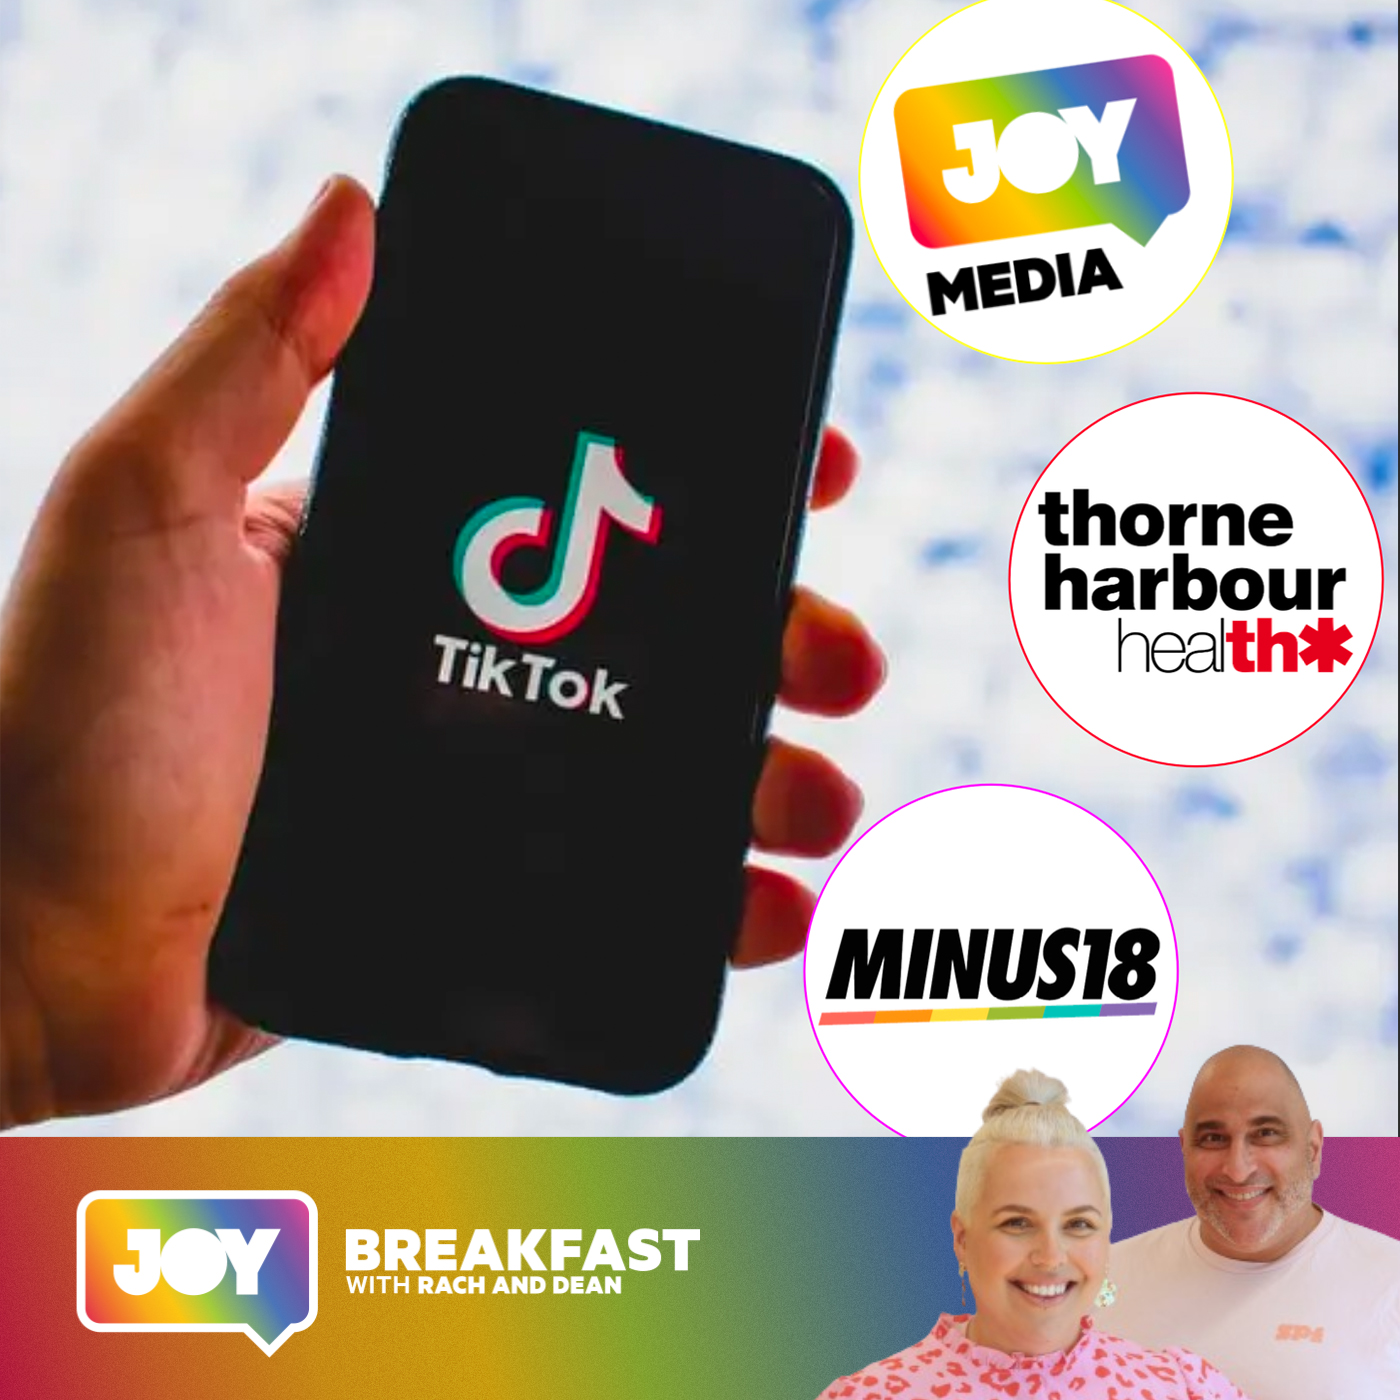 JOY Media, Thorne Harbour & Minus18 take to TikTok